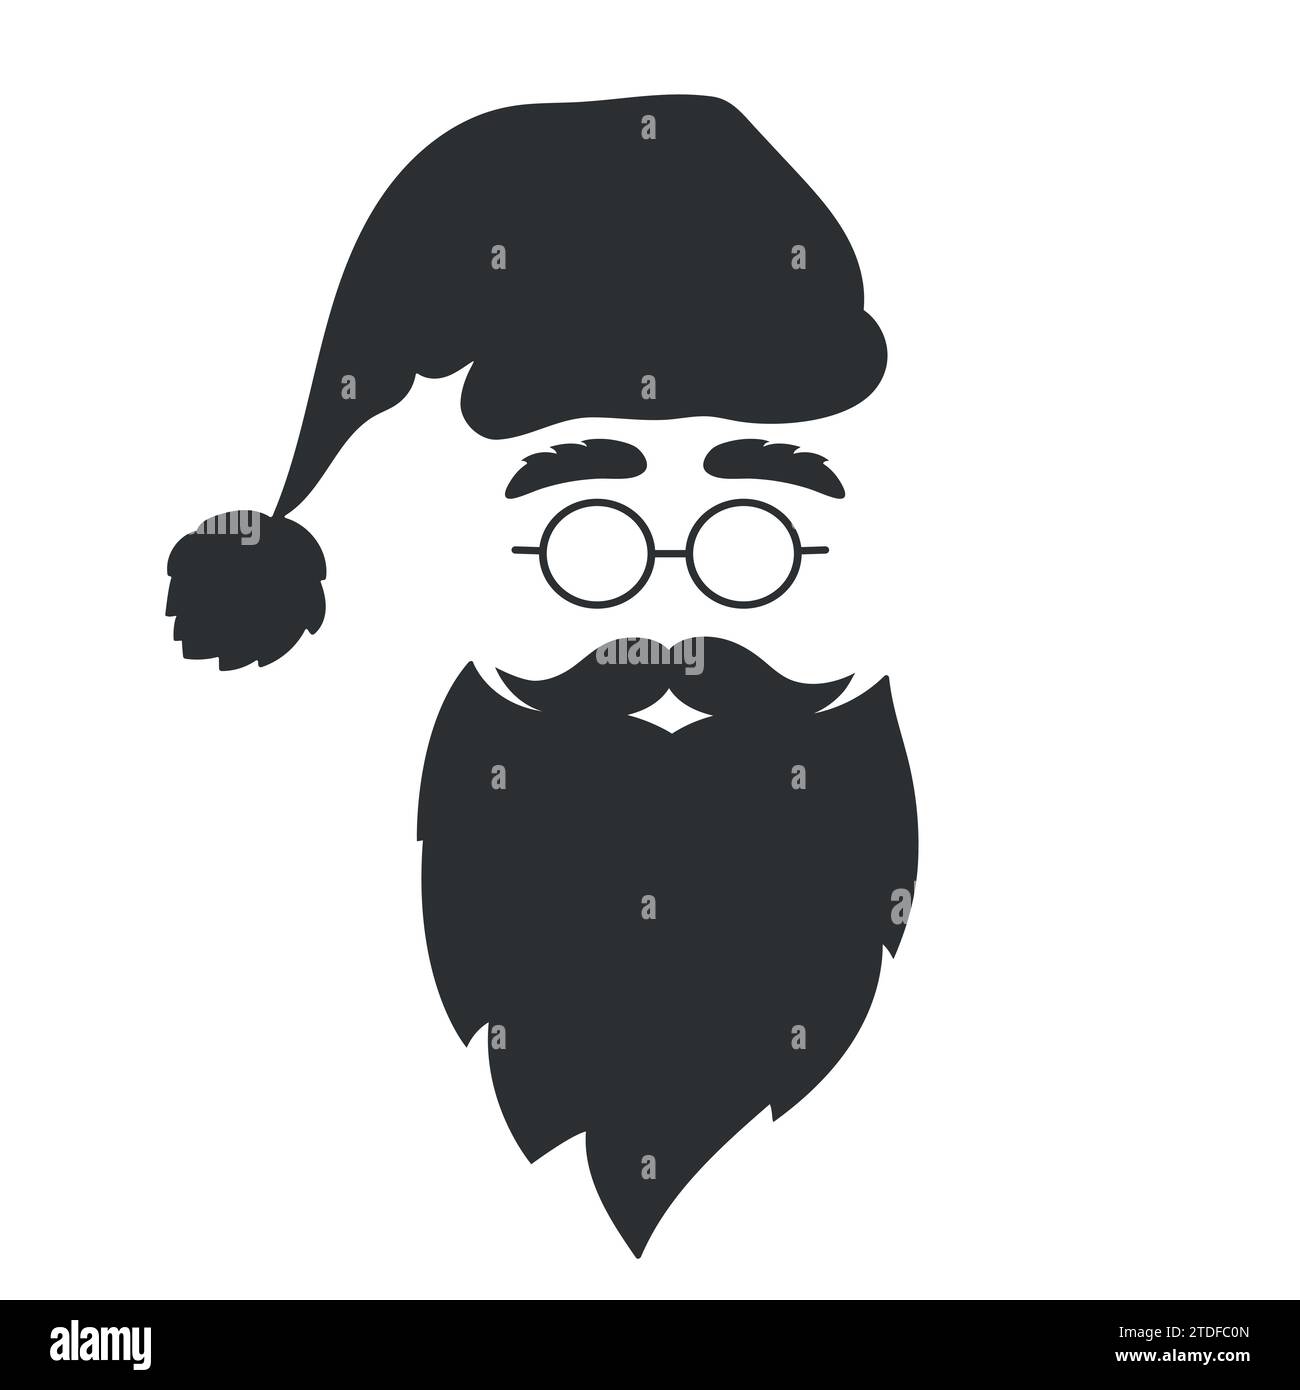 Silhouette des Weihnachtsmanns auf weißem Hintergrund. Hut, Bart, Schnurrbart, Augenbrauen und Brille. Weihnachtssymbol. Vektorabbildung Stock Vektor